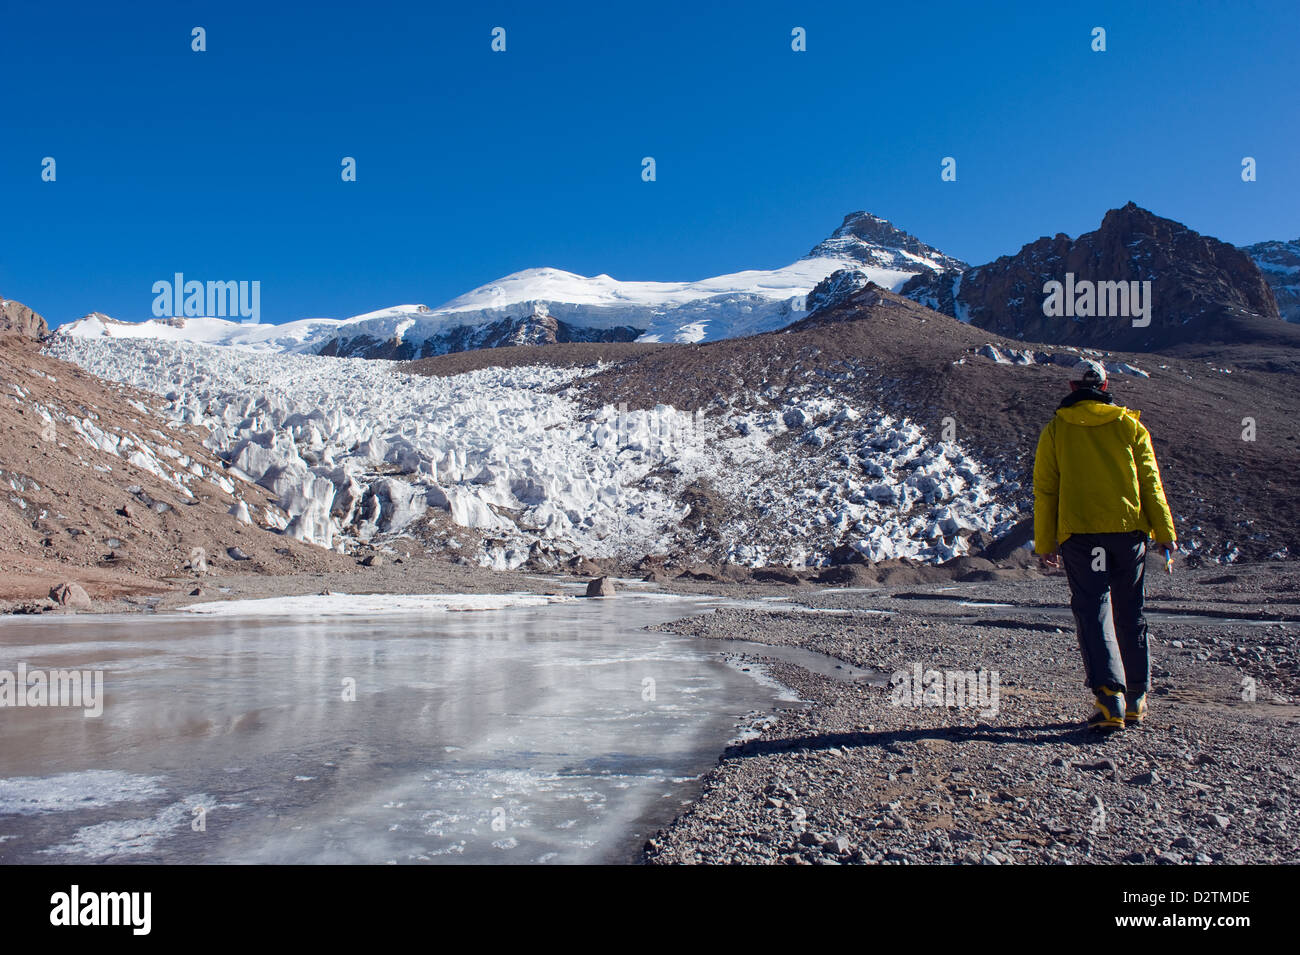 Escursionista presso un ghiacciaio nel parco Aconcagua, le montagne delle Ande, Argentina, Sud America Foto Stock